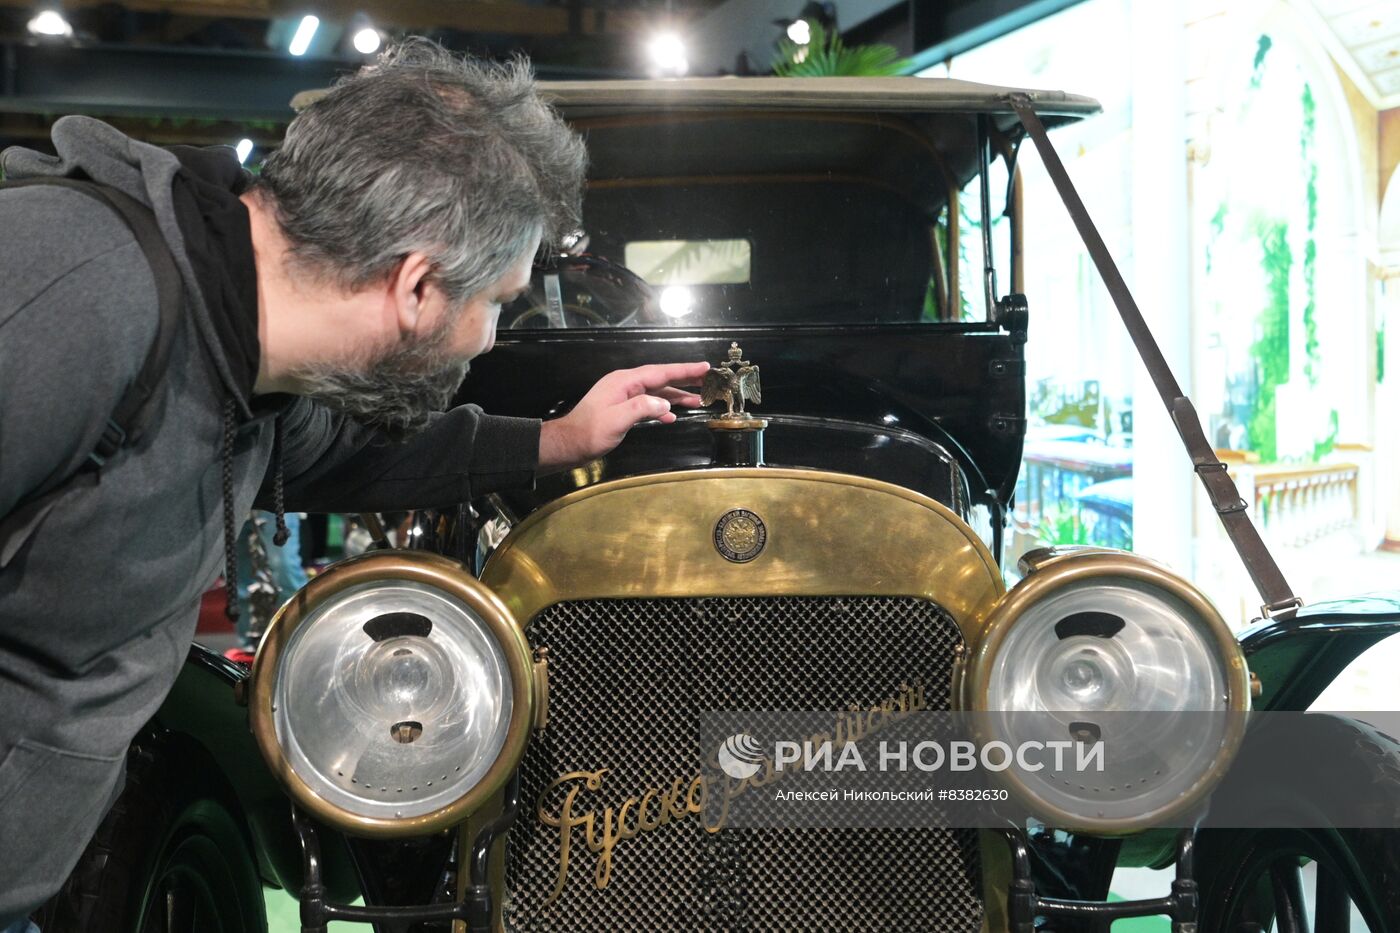 Выставка "Первые моторы России"